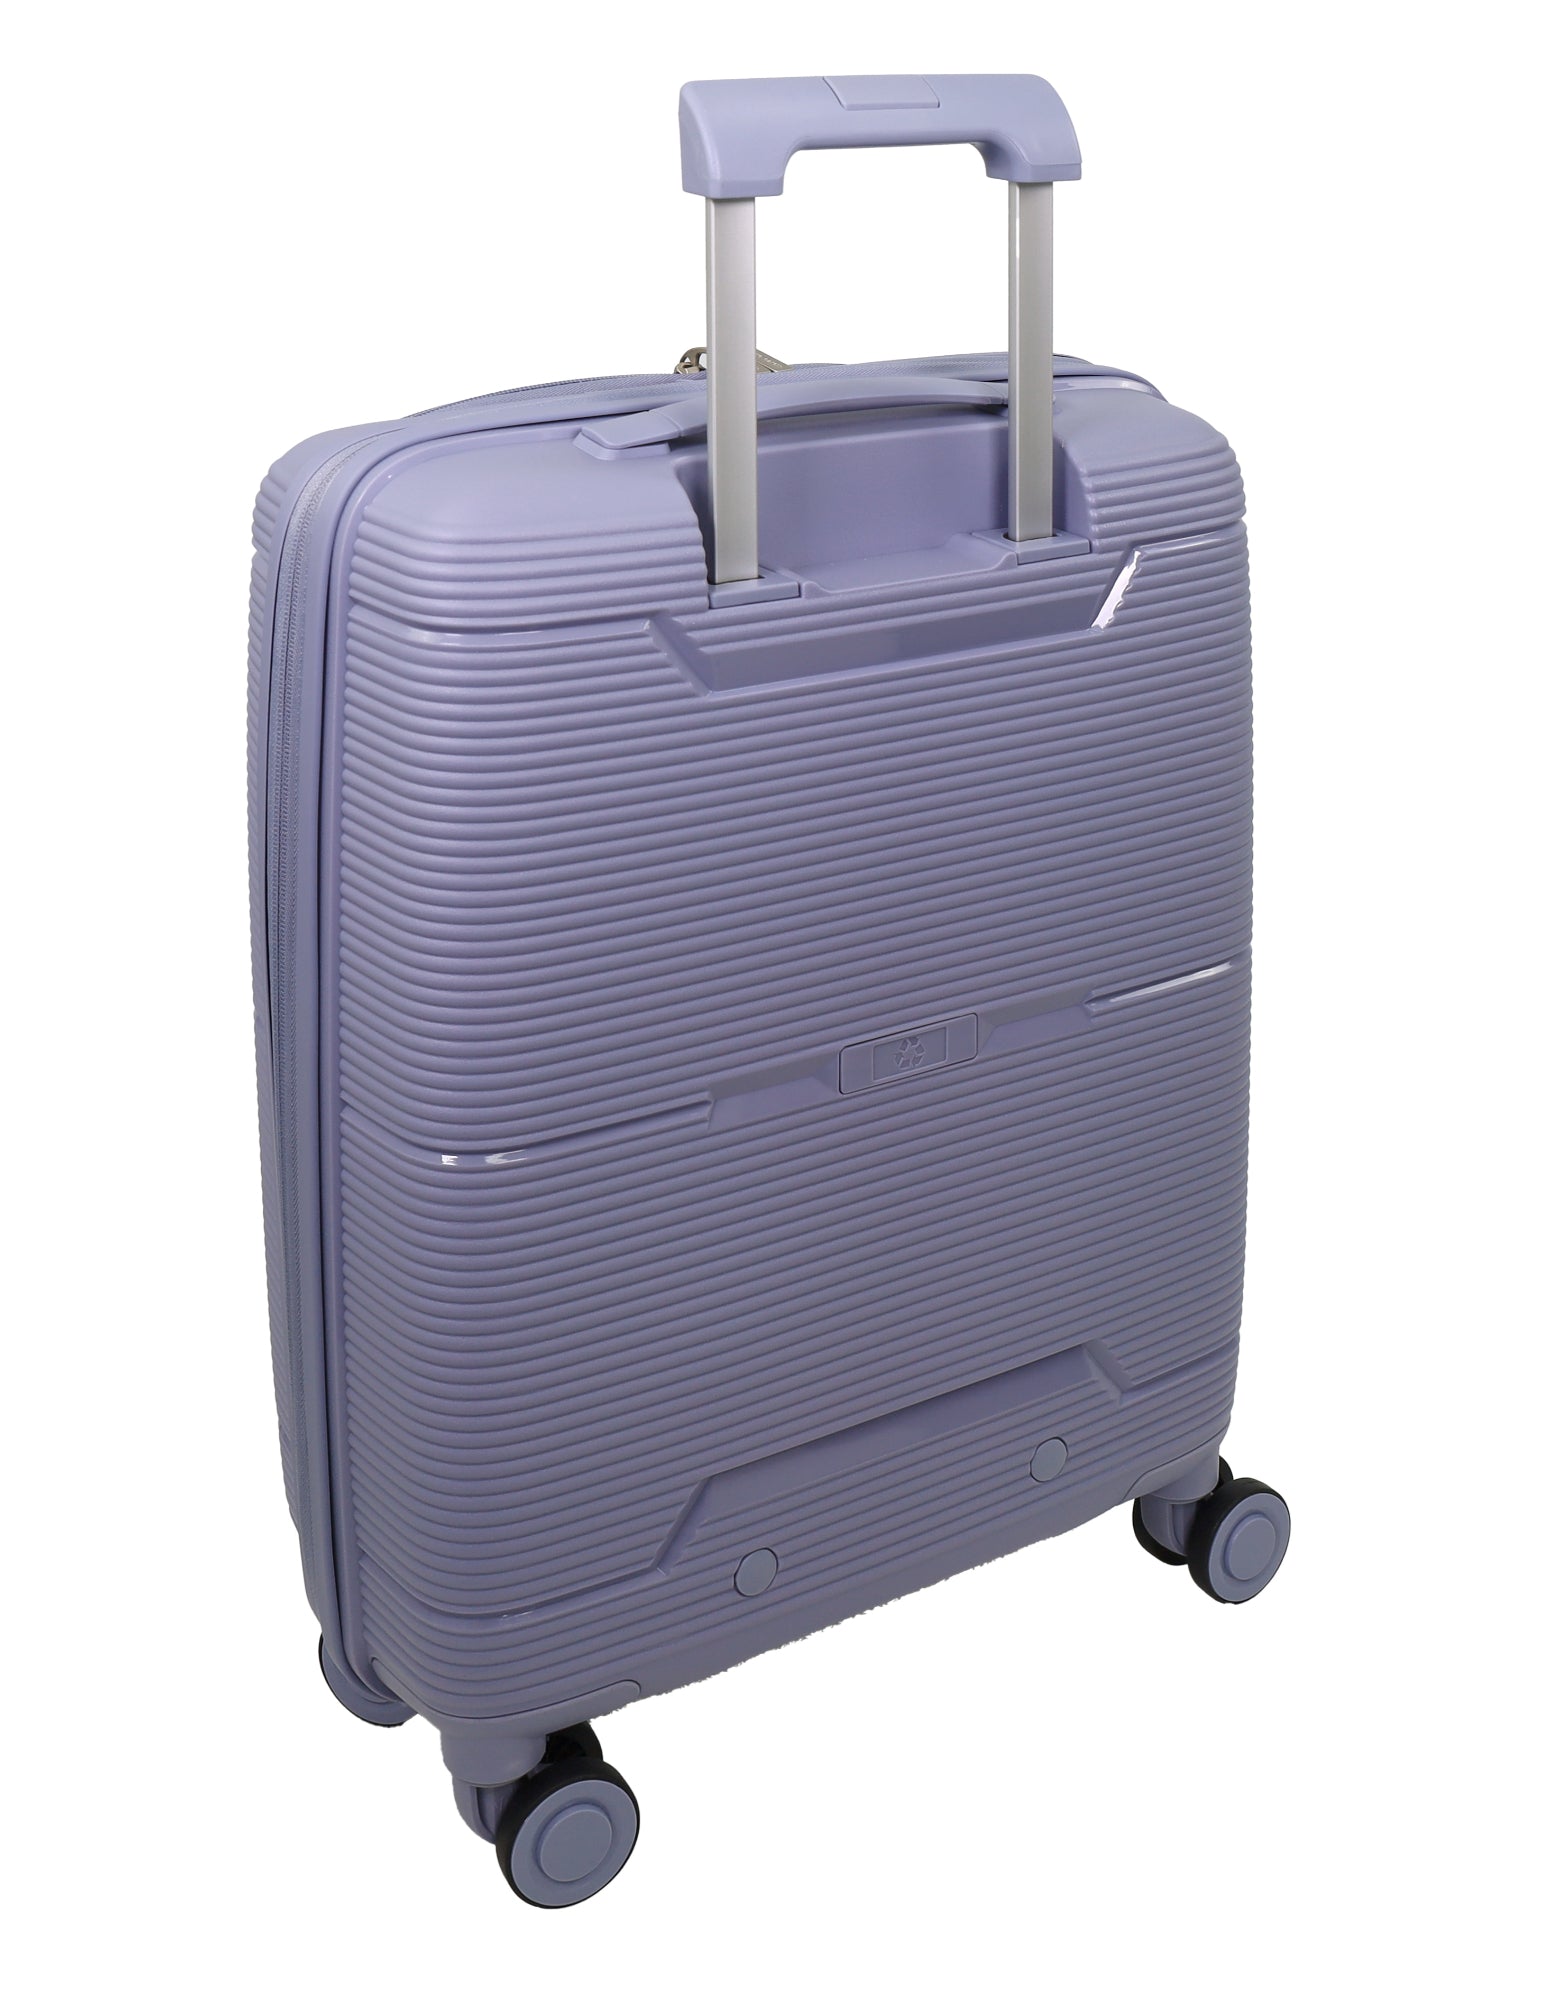 Pierre Cardin Hard-Shell 3-Piece Luggage Set in Blue